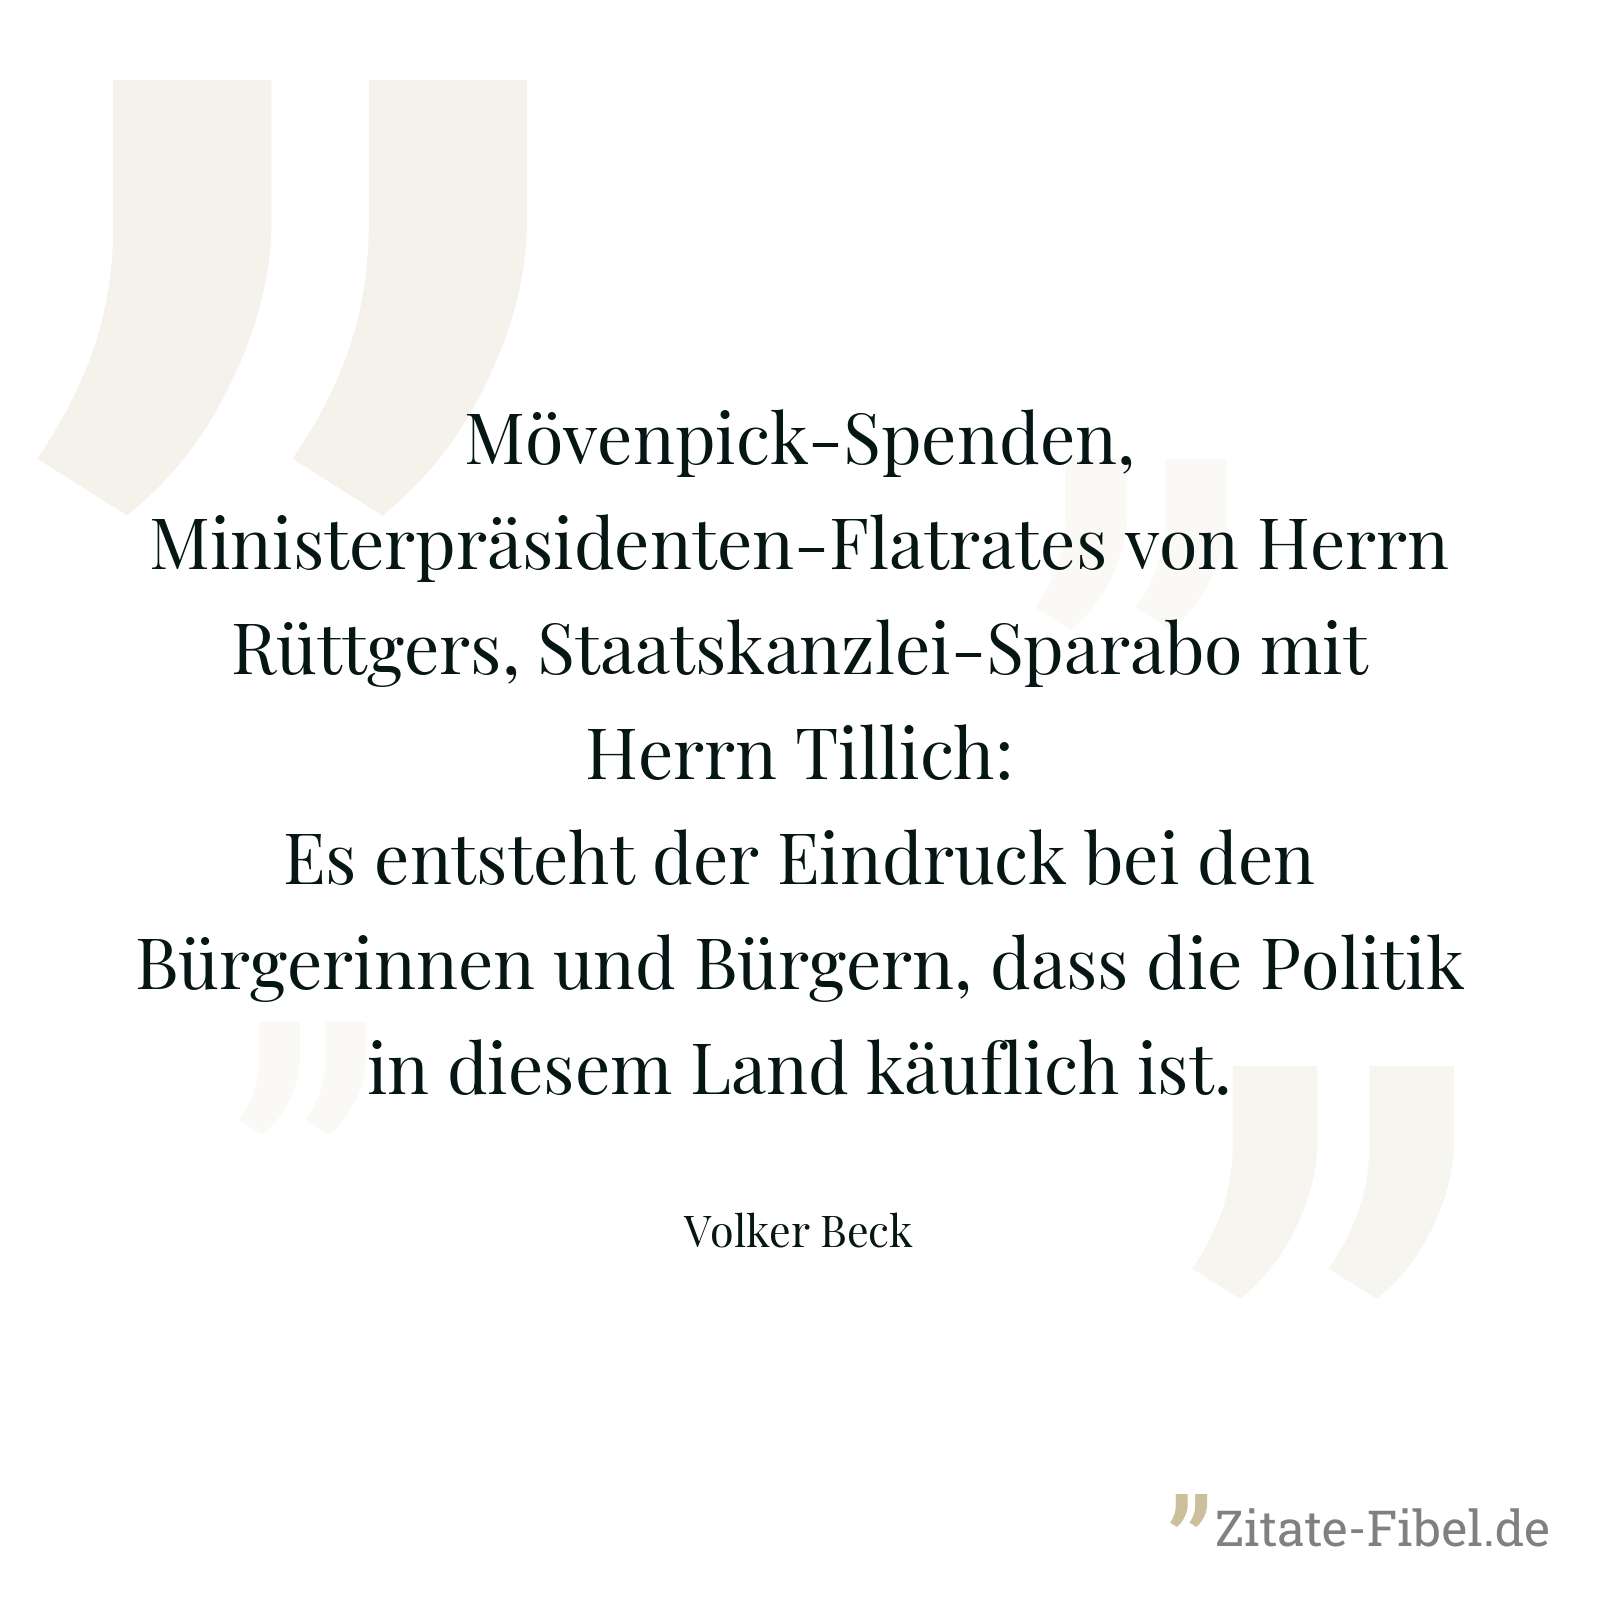 Mövenpick-Spenden, Ministerpräsidenten-Flatrates von Herrn Rüttgers, Staatskanzlei-Sparabo mit Herrn Tillich: Es entsteht der Eindruck bei den Bürgerinnen und Bürgern, dass die Politik in diesem Land käuflich ist. - Volker Beck